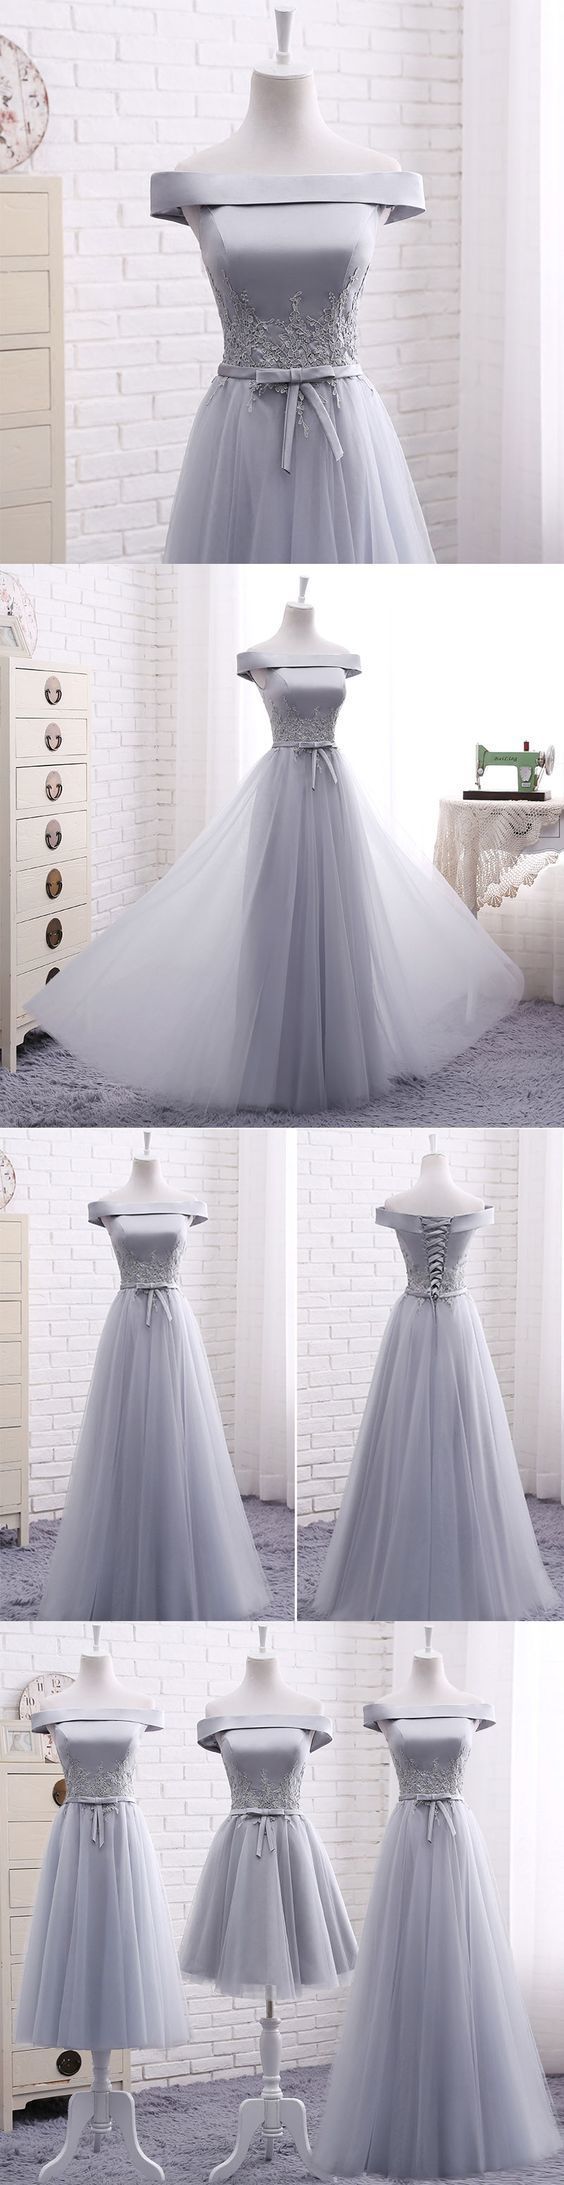 Elegant A Line Gray Off Shoulder Long Prom Dress, Short Evening Dresses,formal Evening Gown, M1948